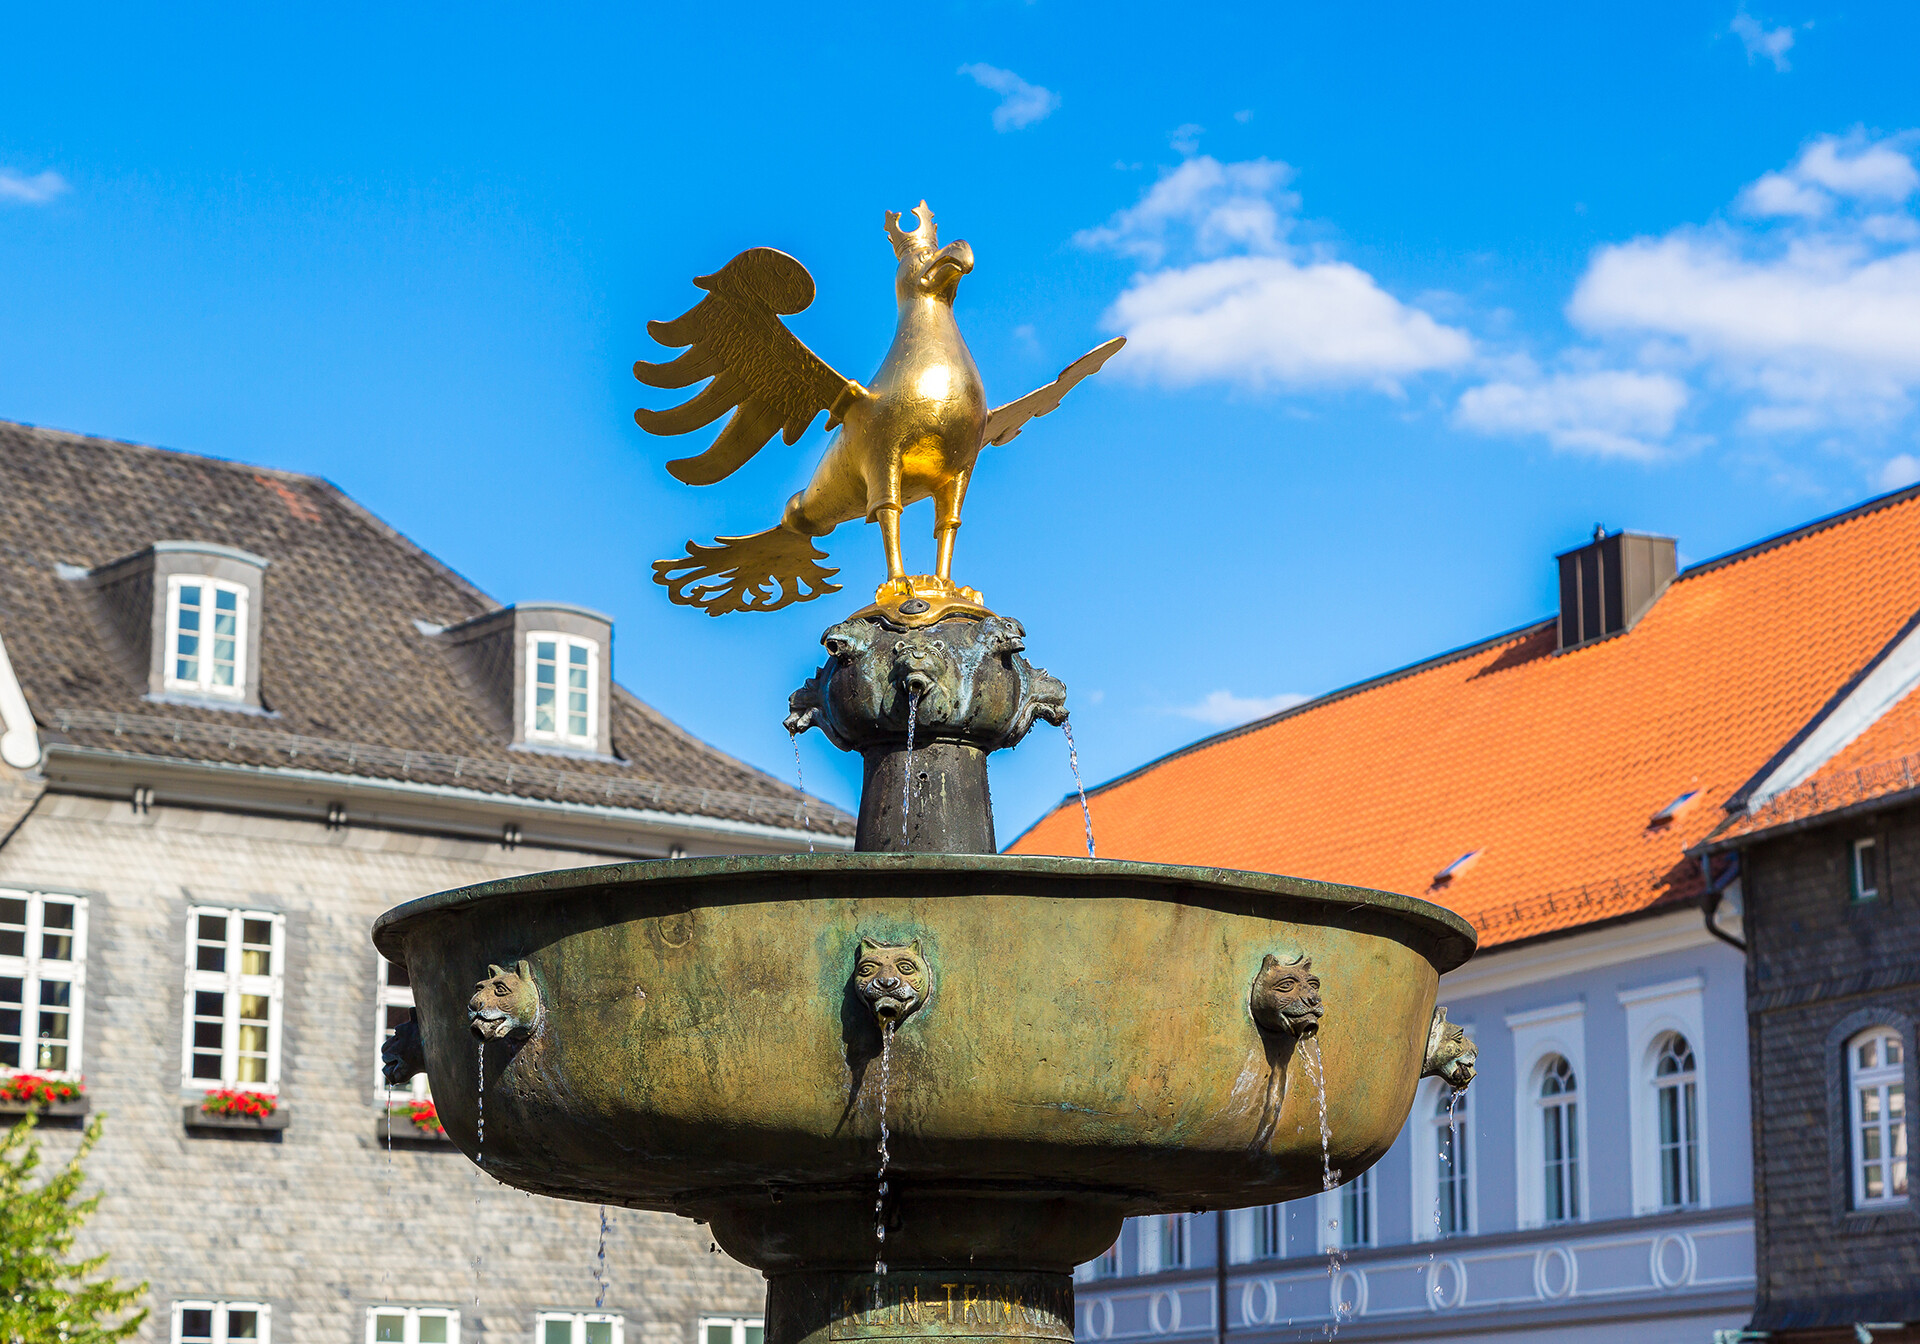 Springvand på Goslars markedsplads